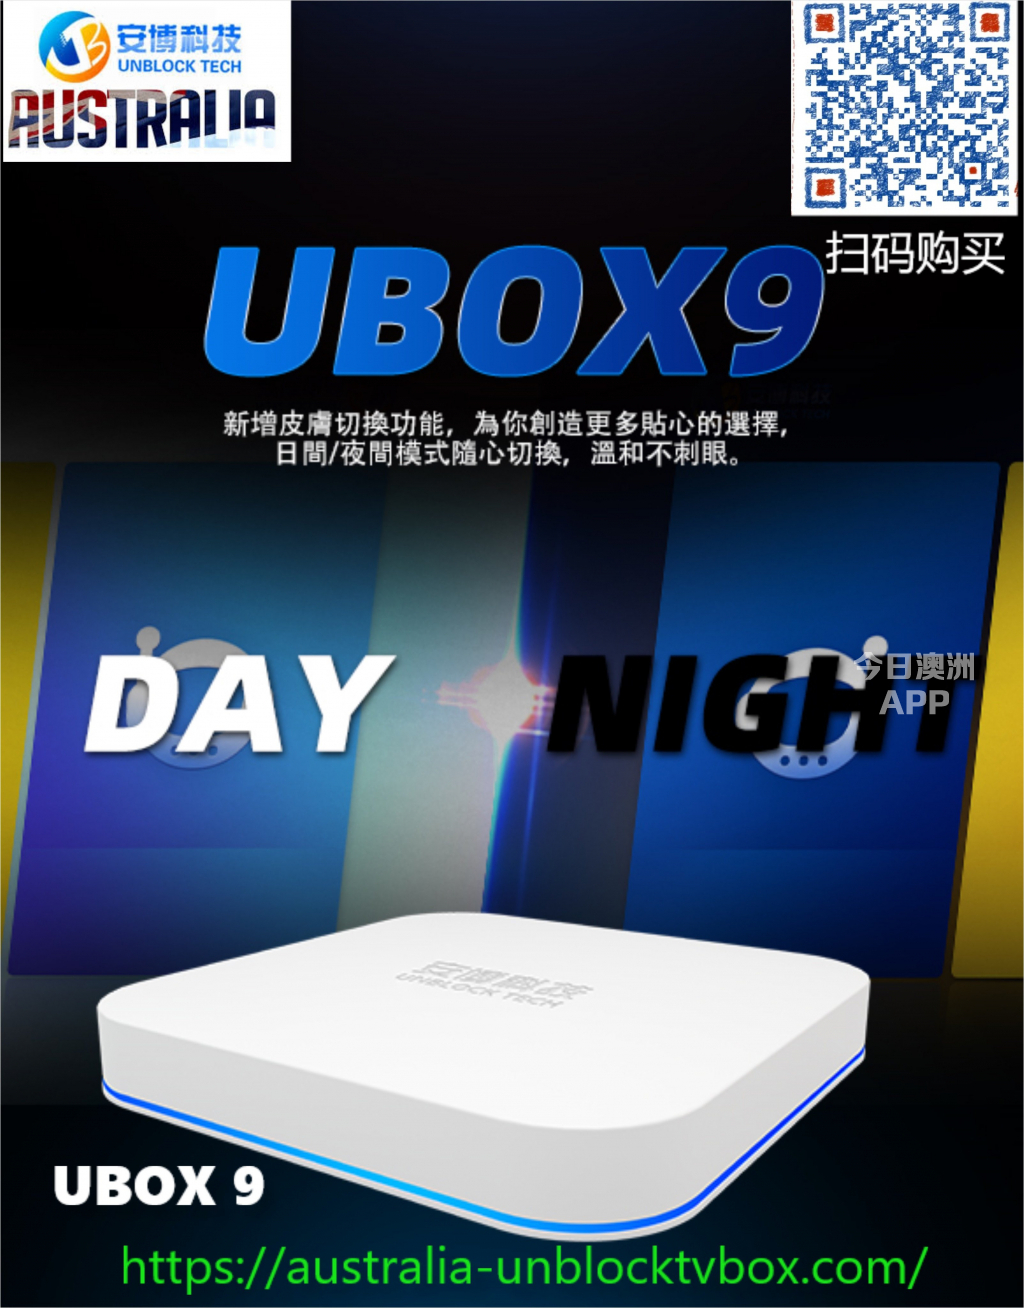 澳洲唯一 一家安博9代澳洲官方授权代理 UBOX 9代 unblock tech tv box UBOX 9 Gen 9